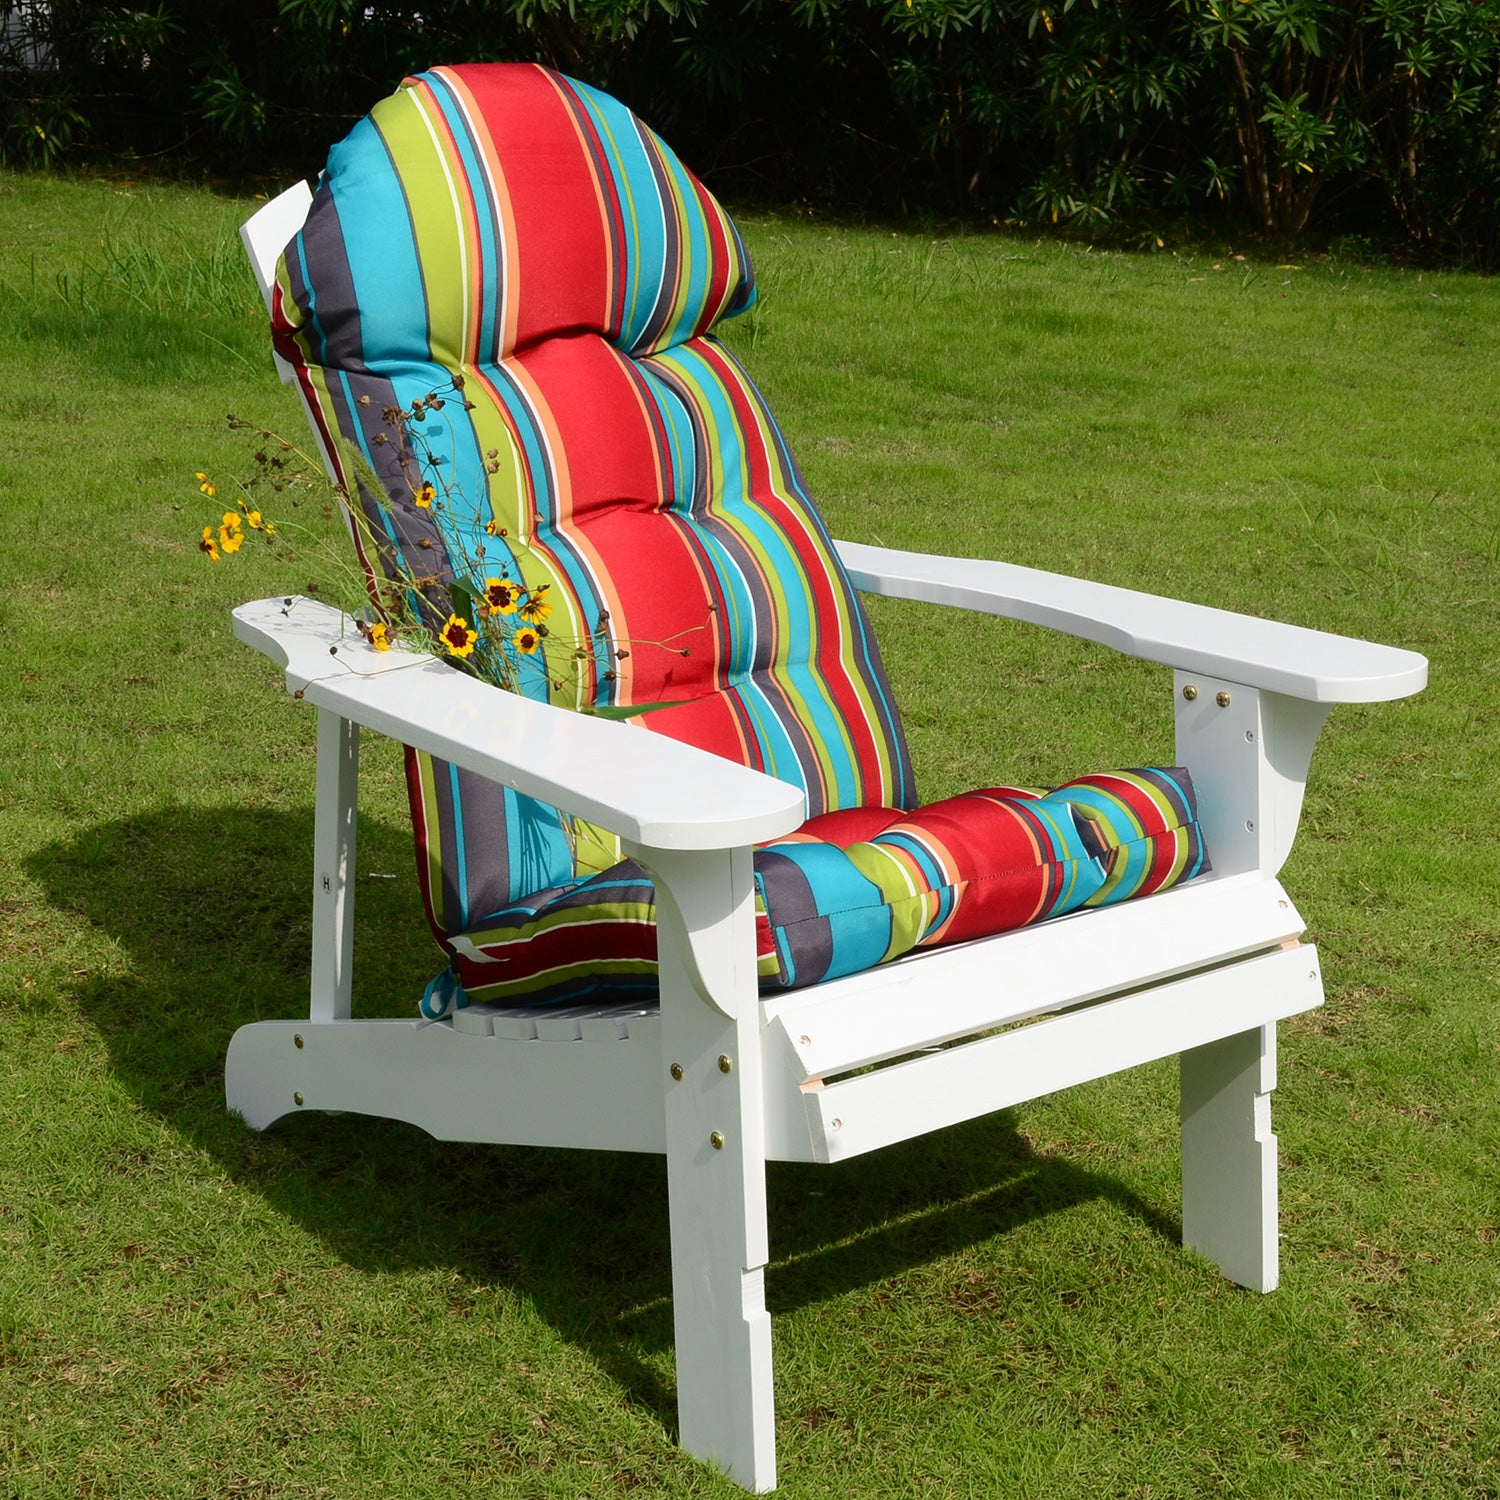 Adirondack Chair Cushions - Adirondack Lounge Chair Outdoor Cushion